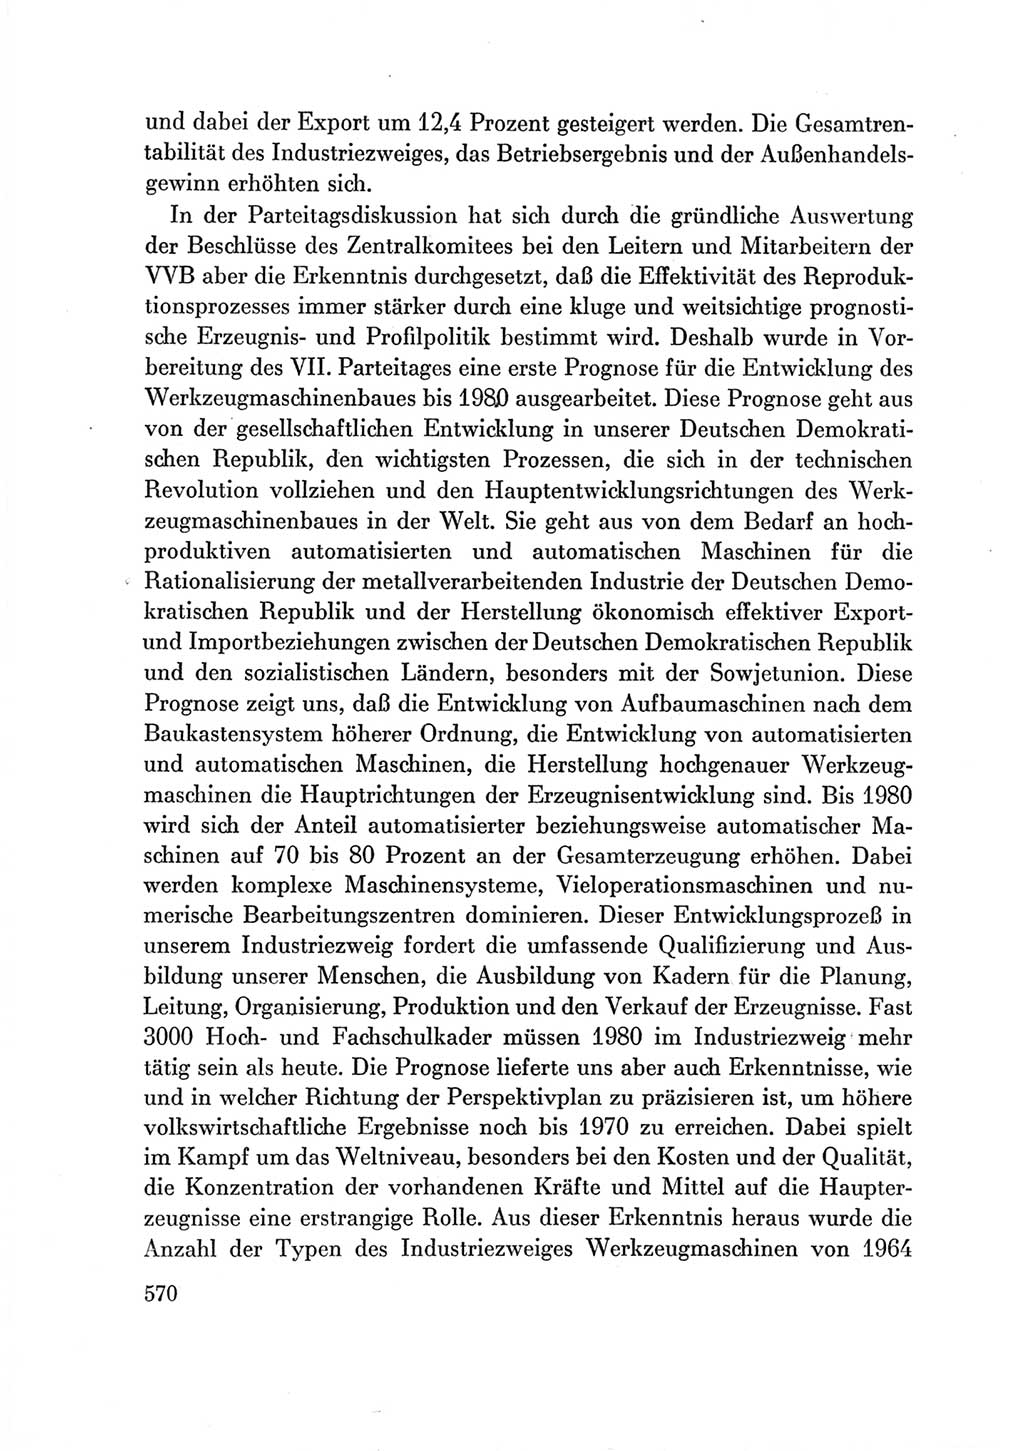 Protokoll der Verhandlungen des Ⅶ. Parteitages der Sozialistischen Einheitspartei Deutschlands (SED) [Deutsche Demokratische Republik (DDR)] 1967, Band Ⅲ, Seite 570 (Prot. Verh. Ⅶ. PT SED DDR 1967, Bd. Ⅲ, S. 570)